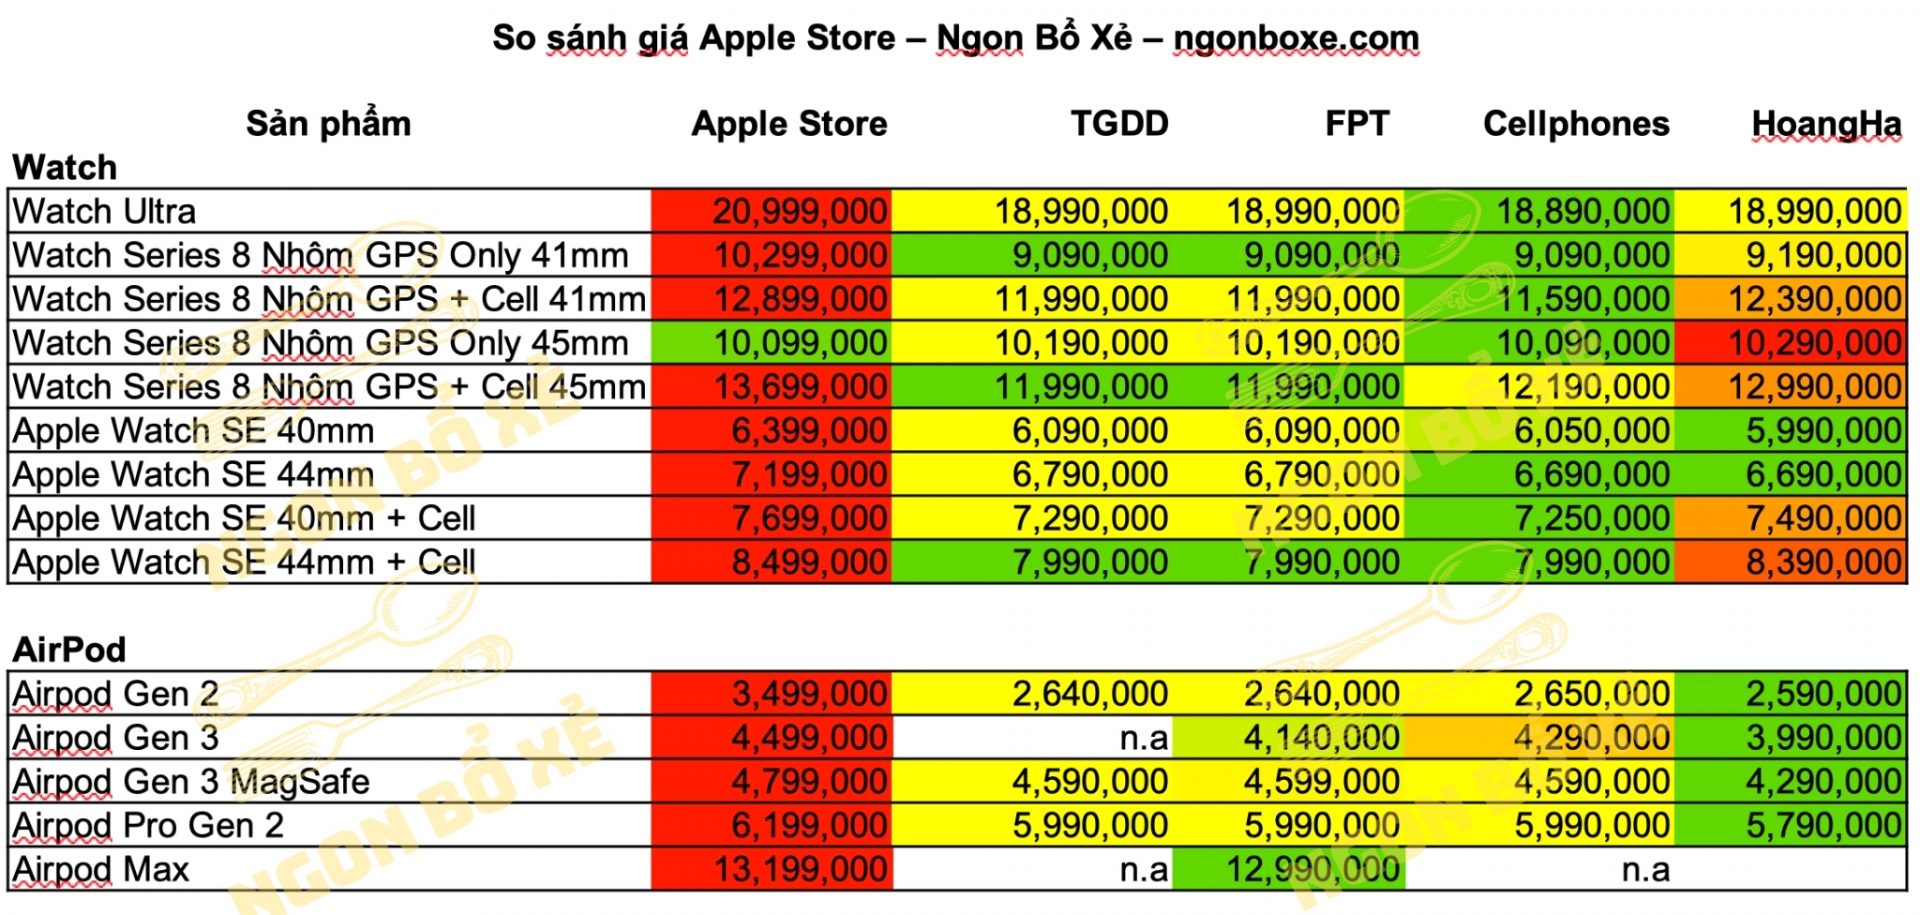 So sánh nhanh giá sản phẩm Apple Store vs các đại lý chính hãng